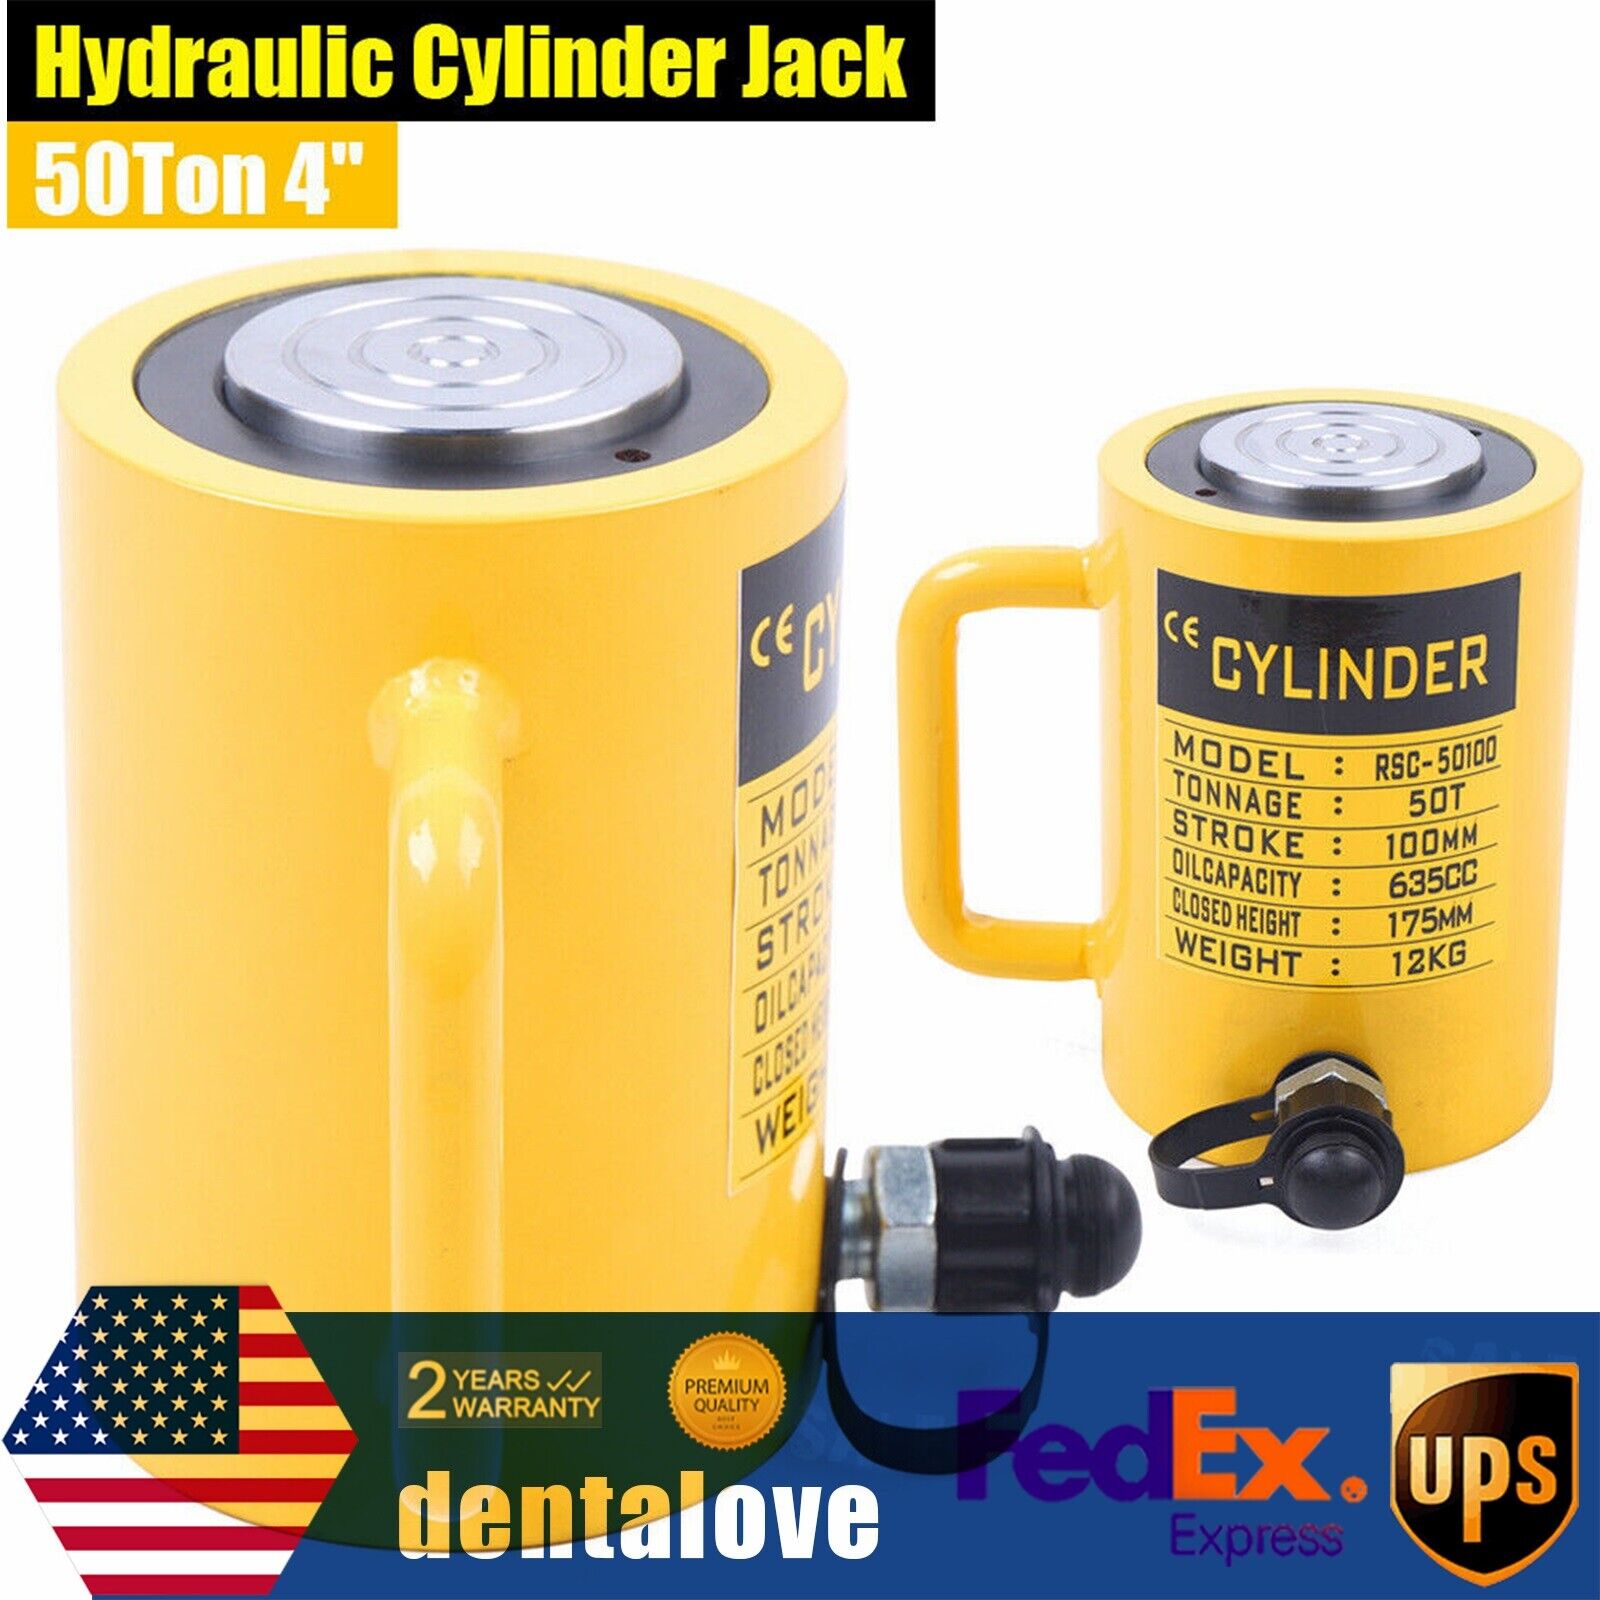 50 Ton Hydraulic Cylinder Jack Single Acting 100mm 4